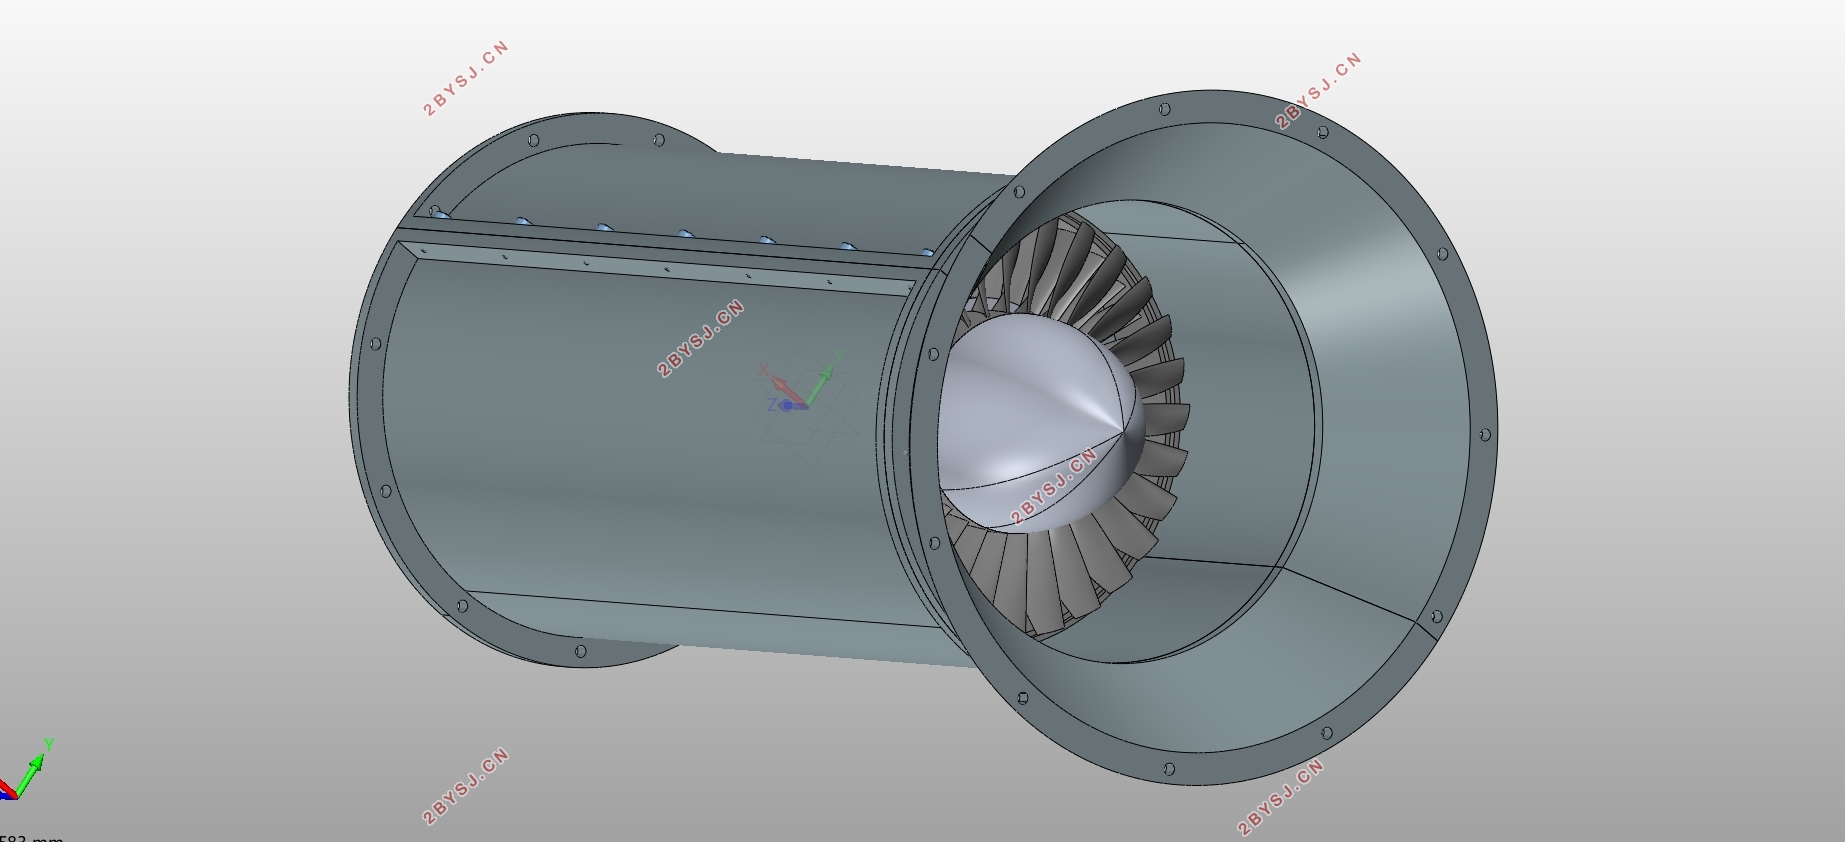 20kgs轴流压气机流道及叶片三维设计(含CAD零件装配图,UG三维图)